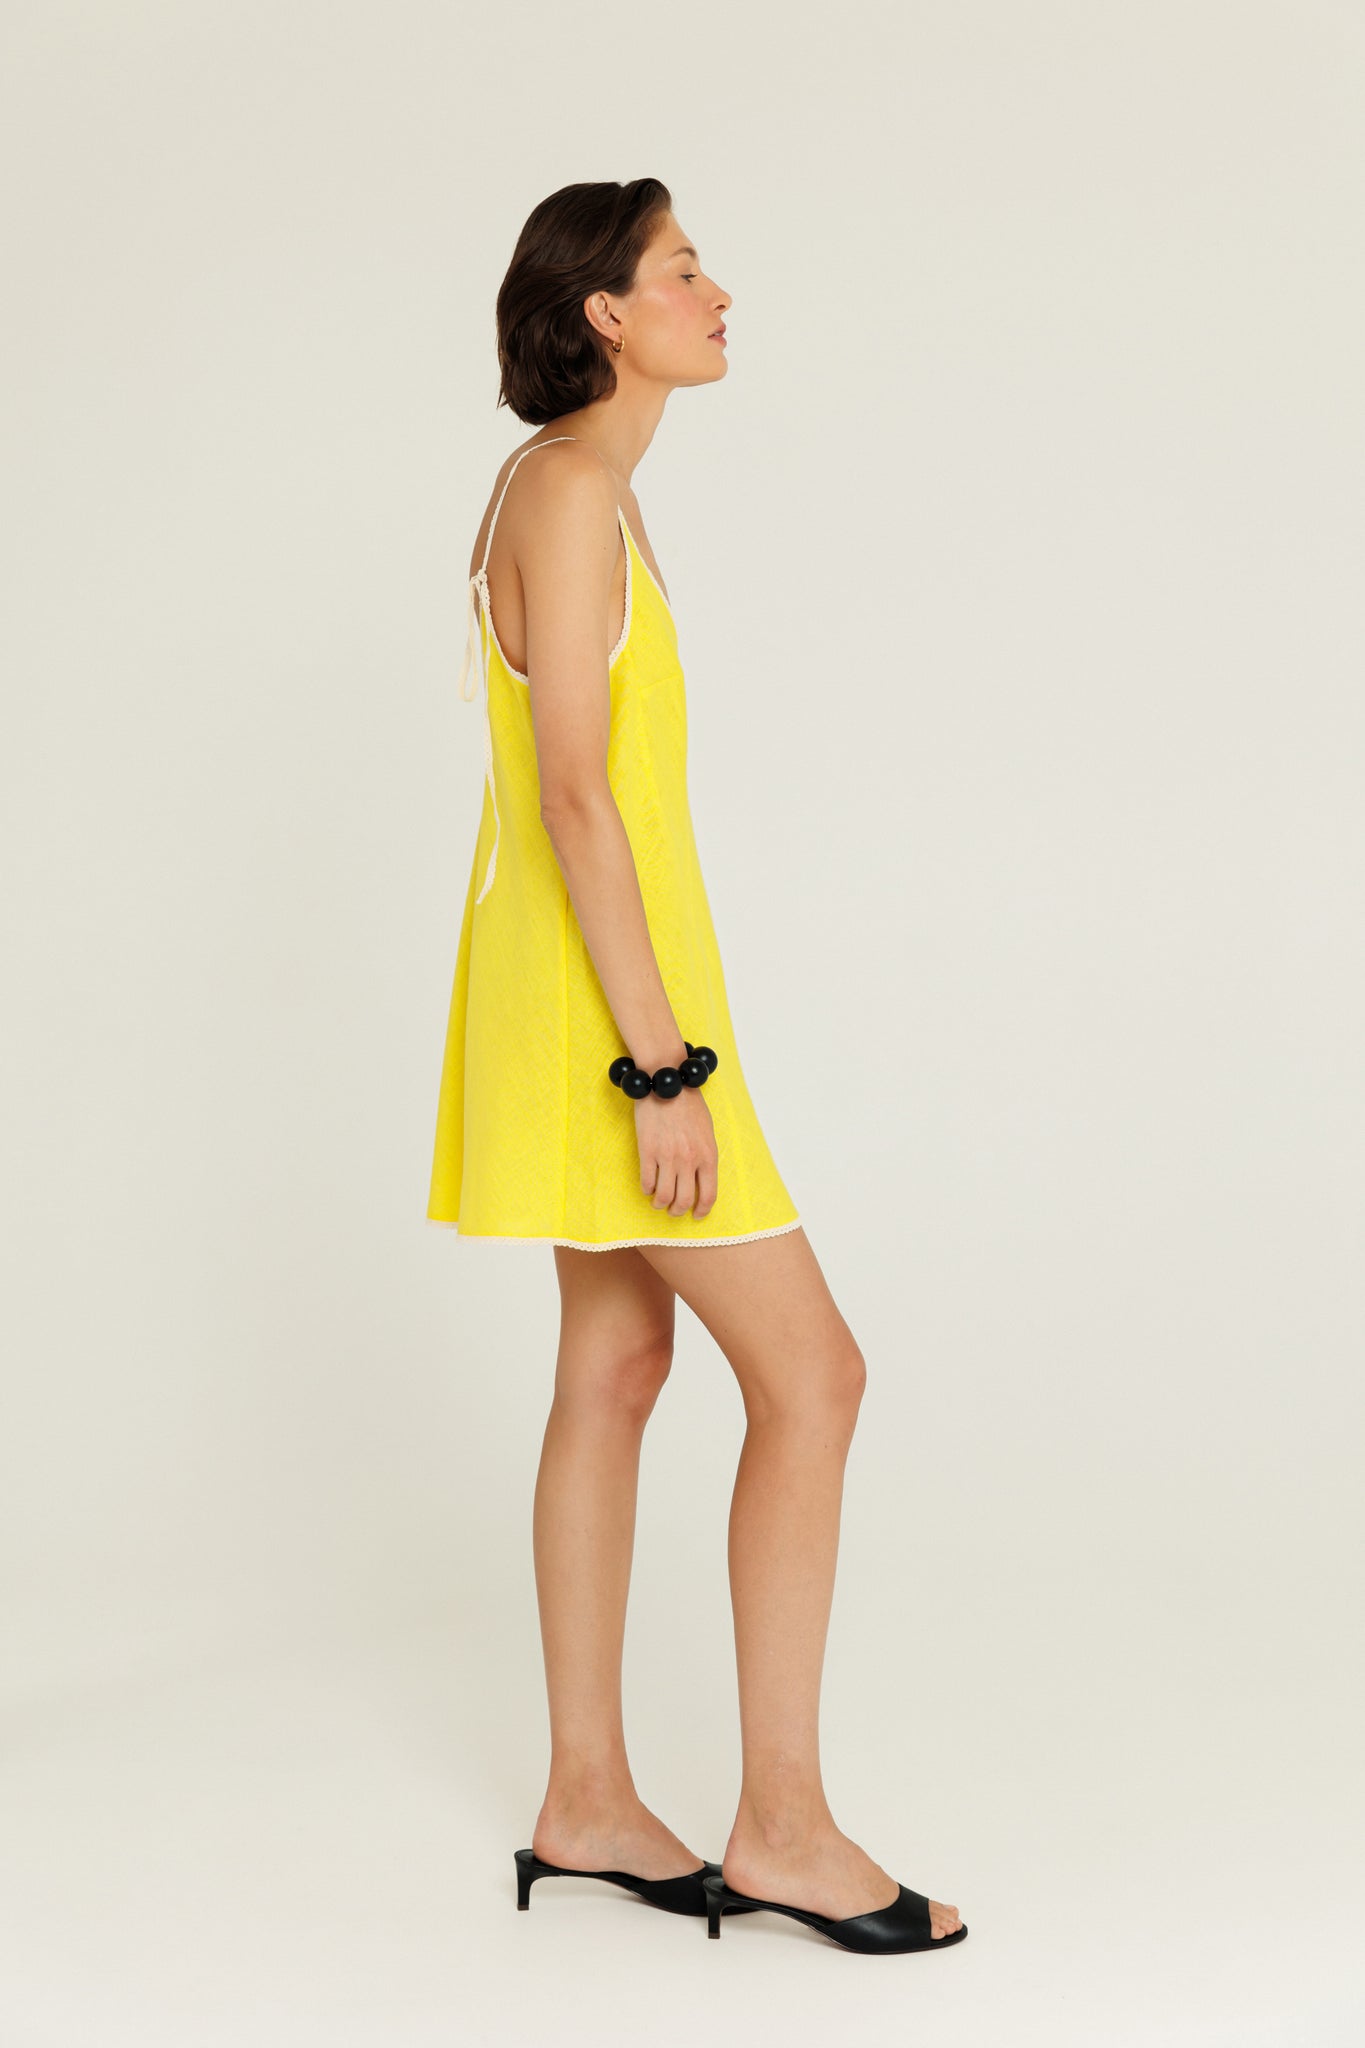 Сонячно-жовта коротка сукня оздоблена мереживом